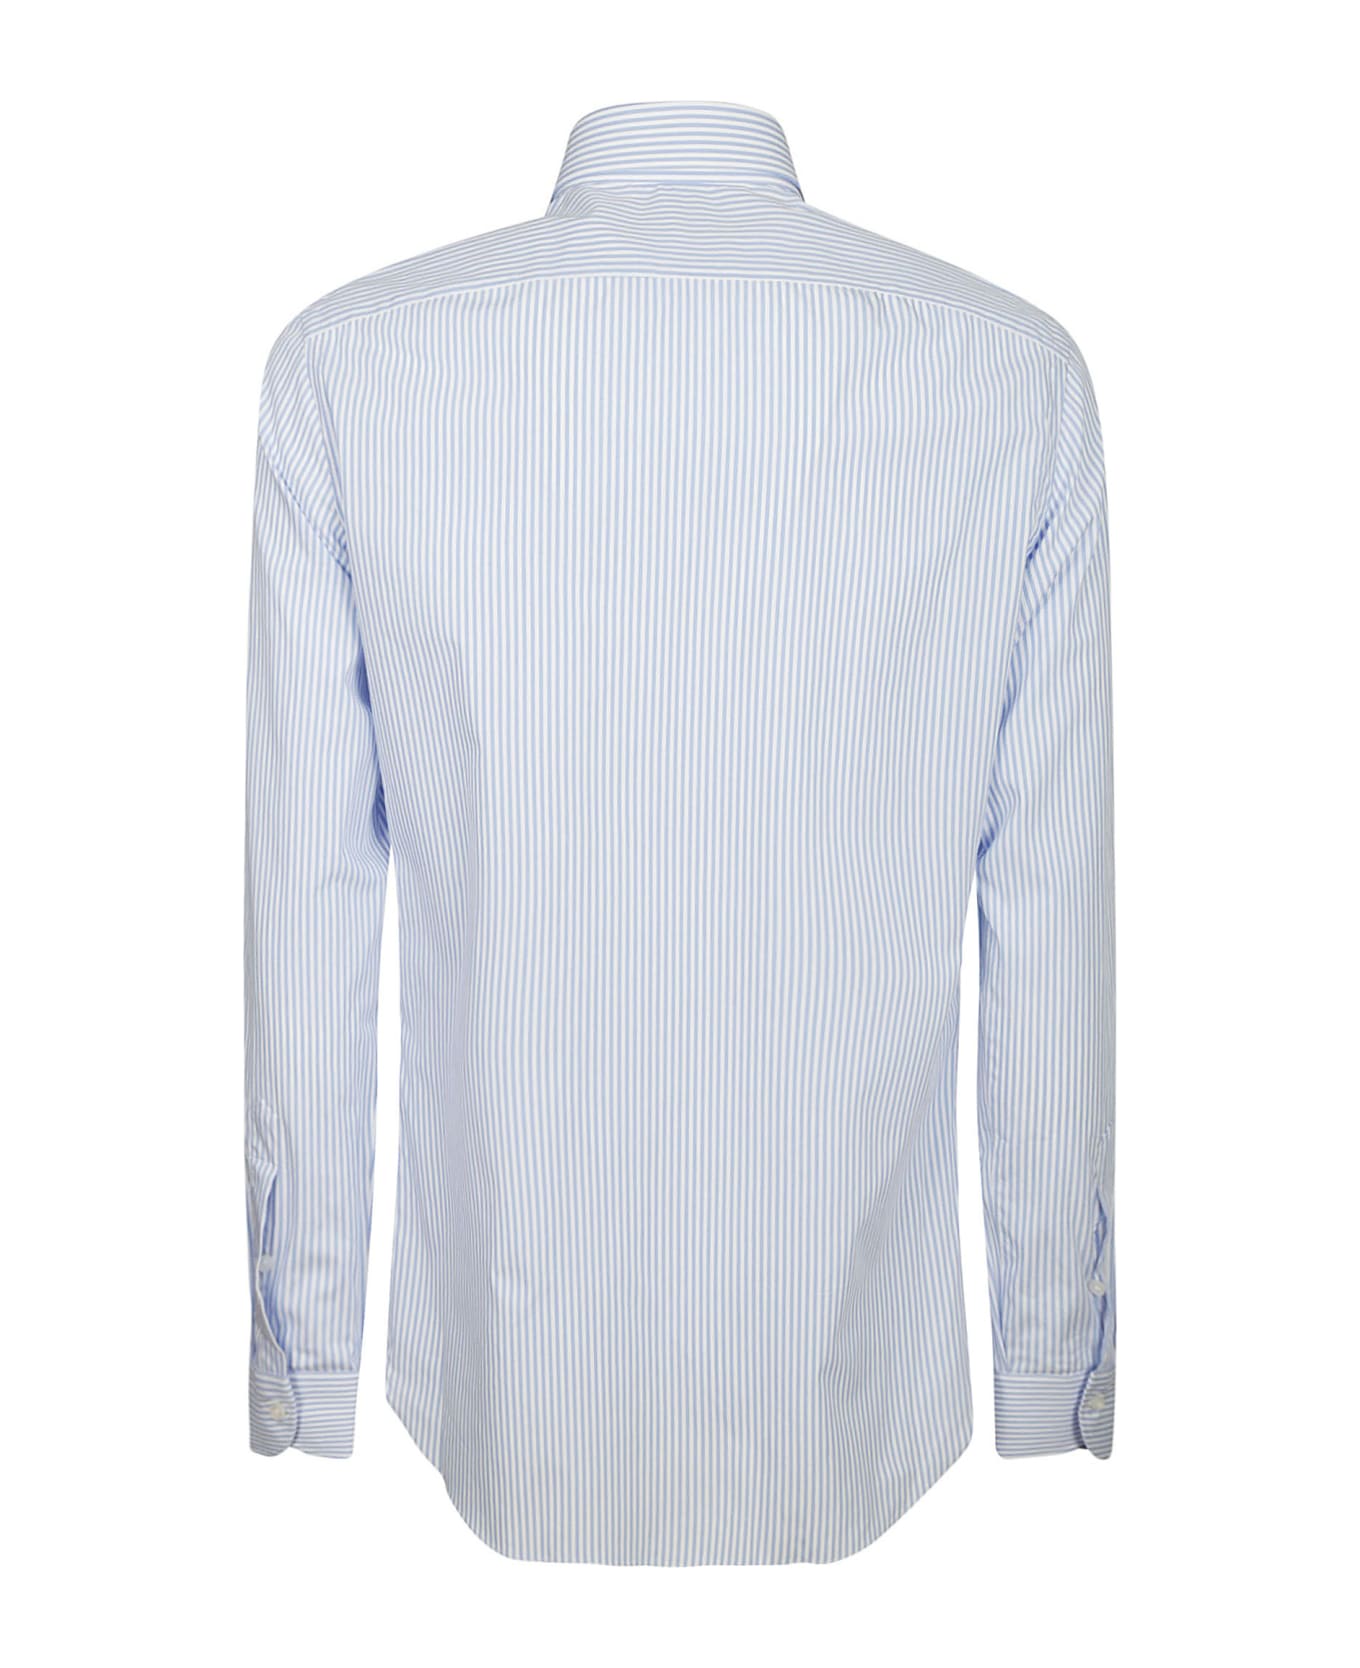 Borriello Napoli Shirt - Stripe Blue